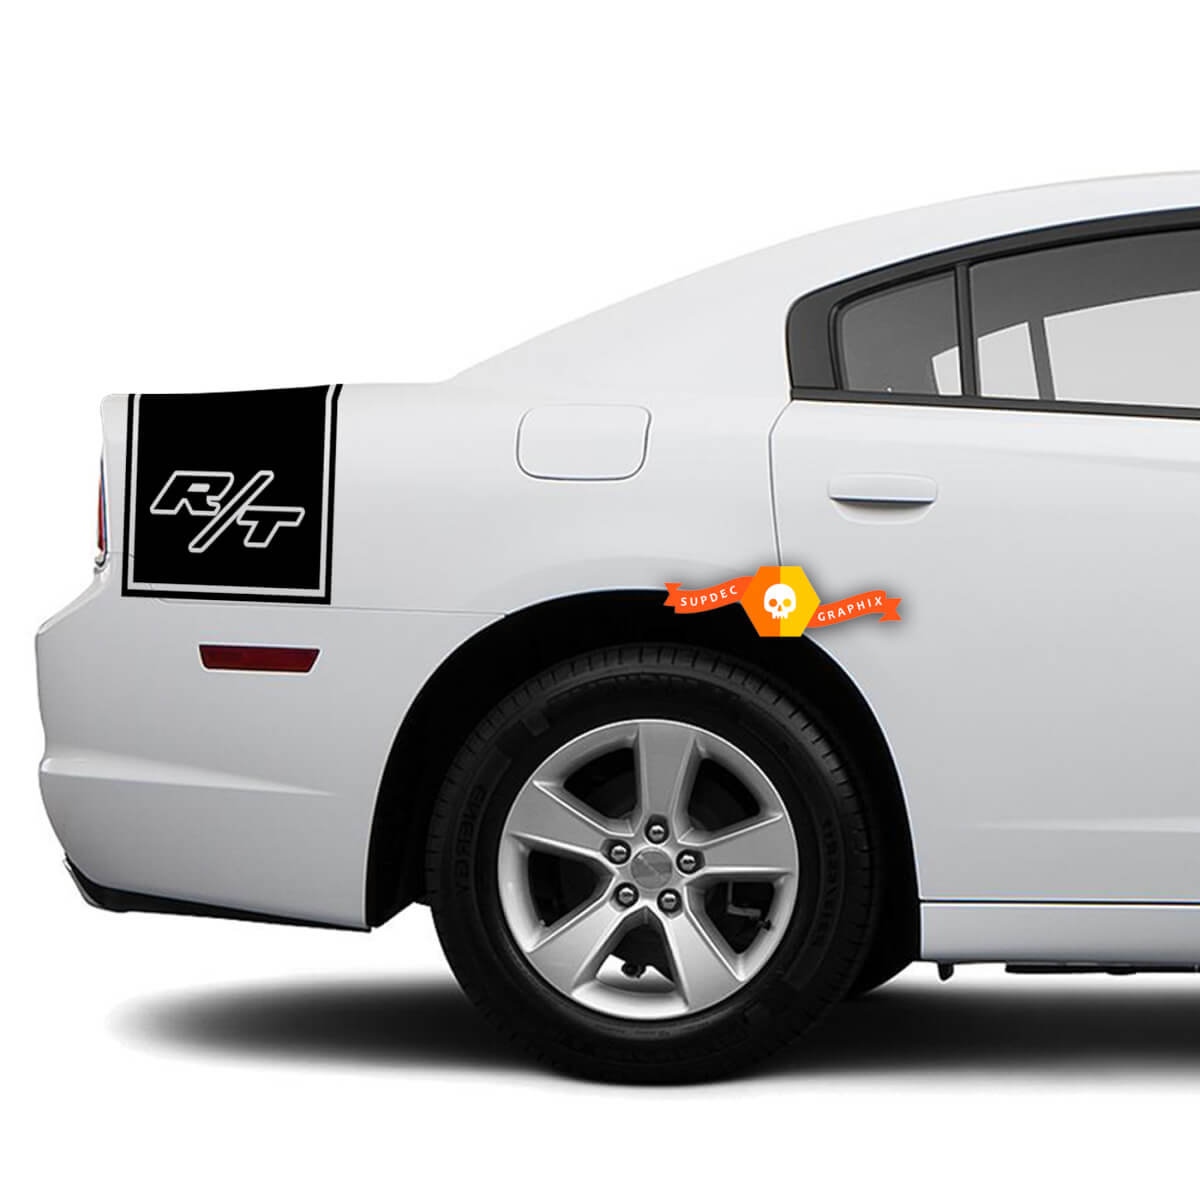 Dodge Charger Rückseite Band Aufkleber Aufkleber R / T Grafik passt zu Modellen 2011-2014